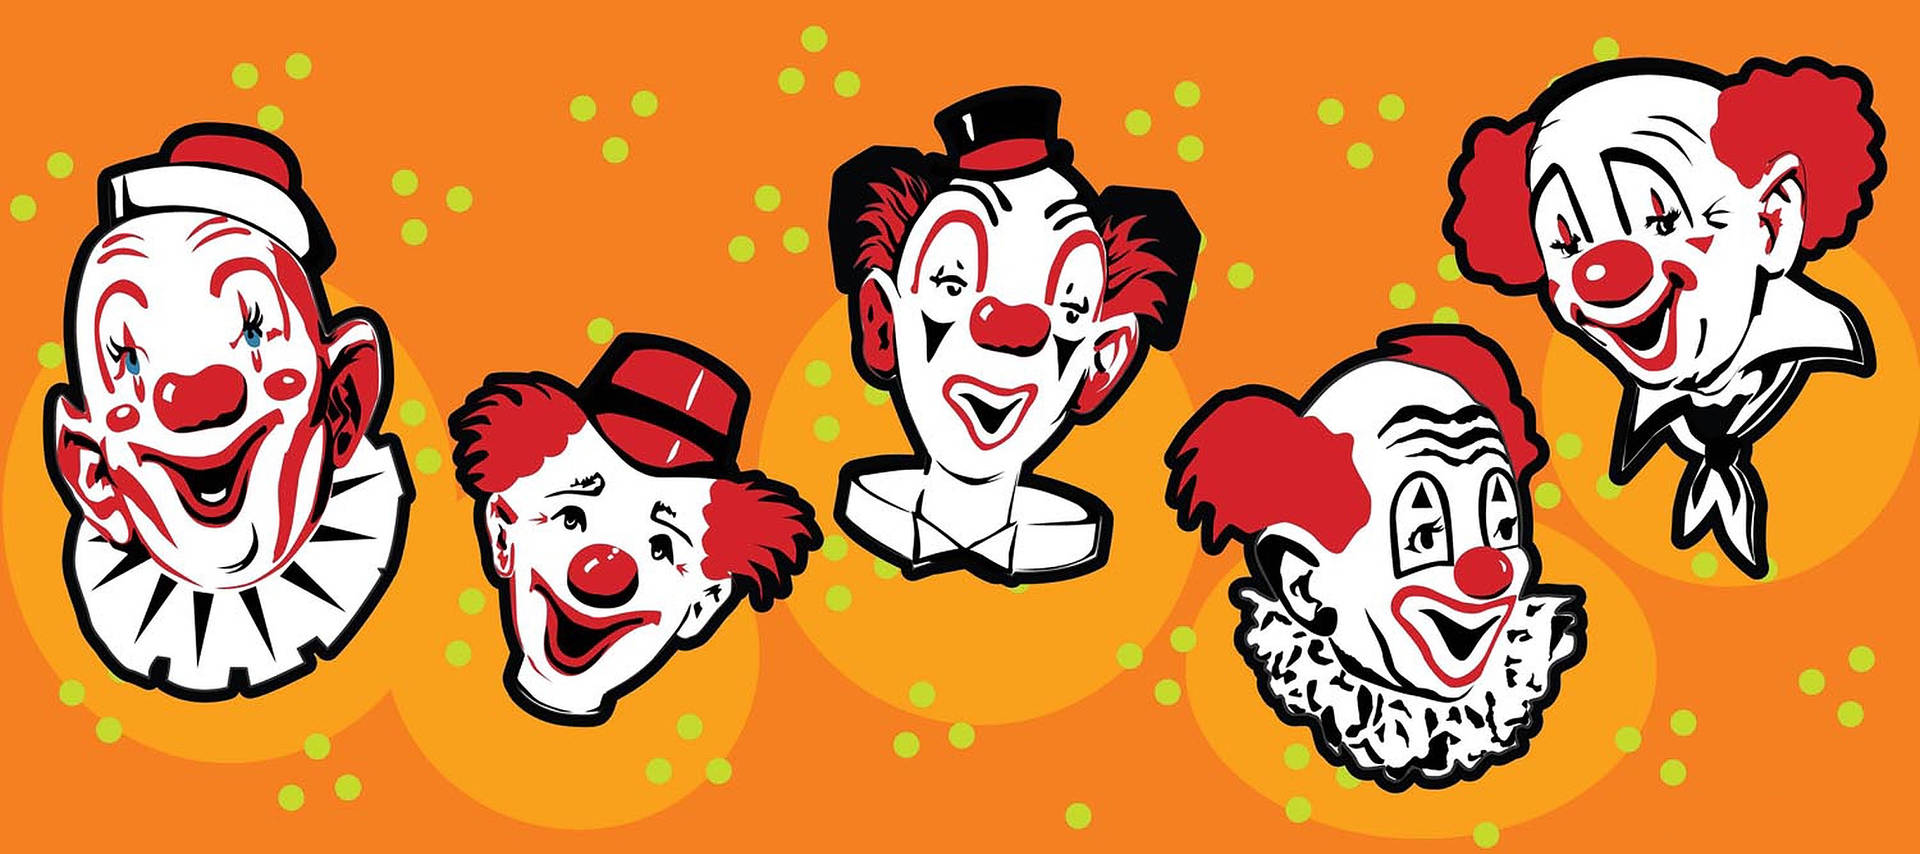 Clowns Vector Art Wallpaper